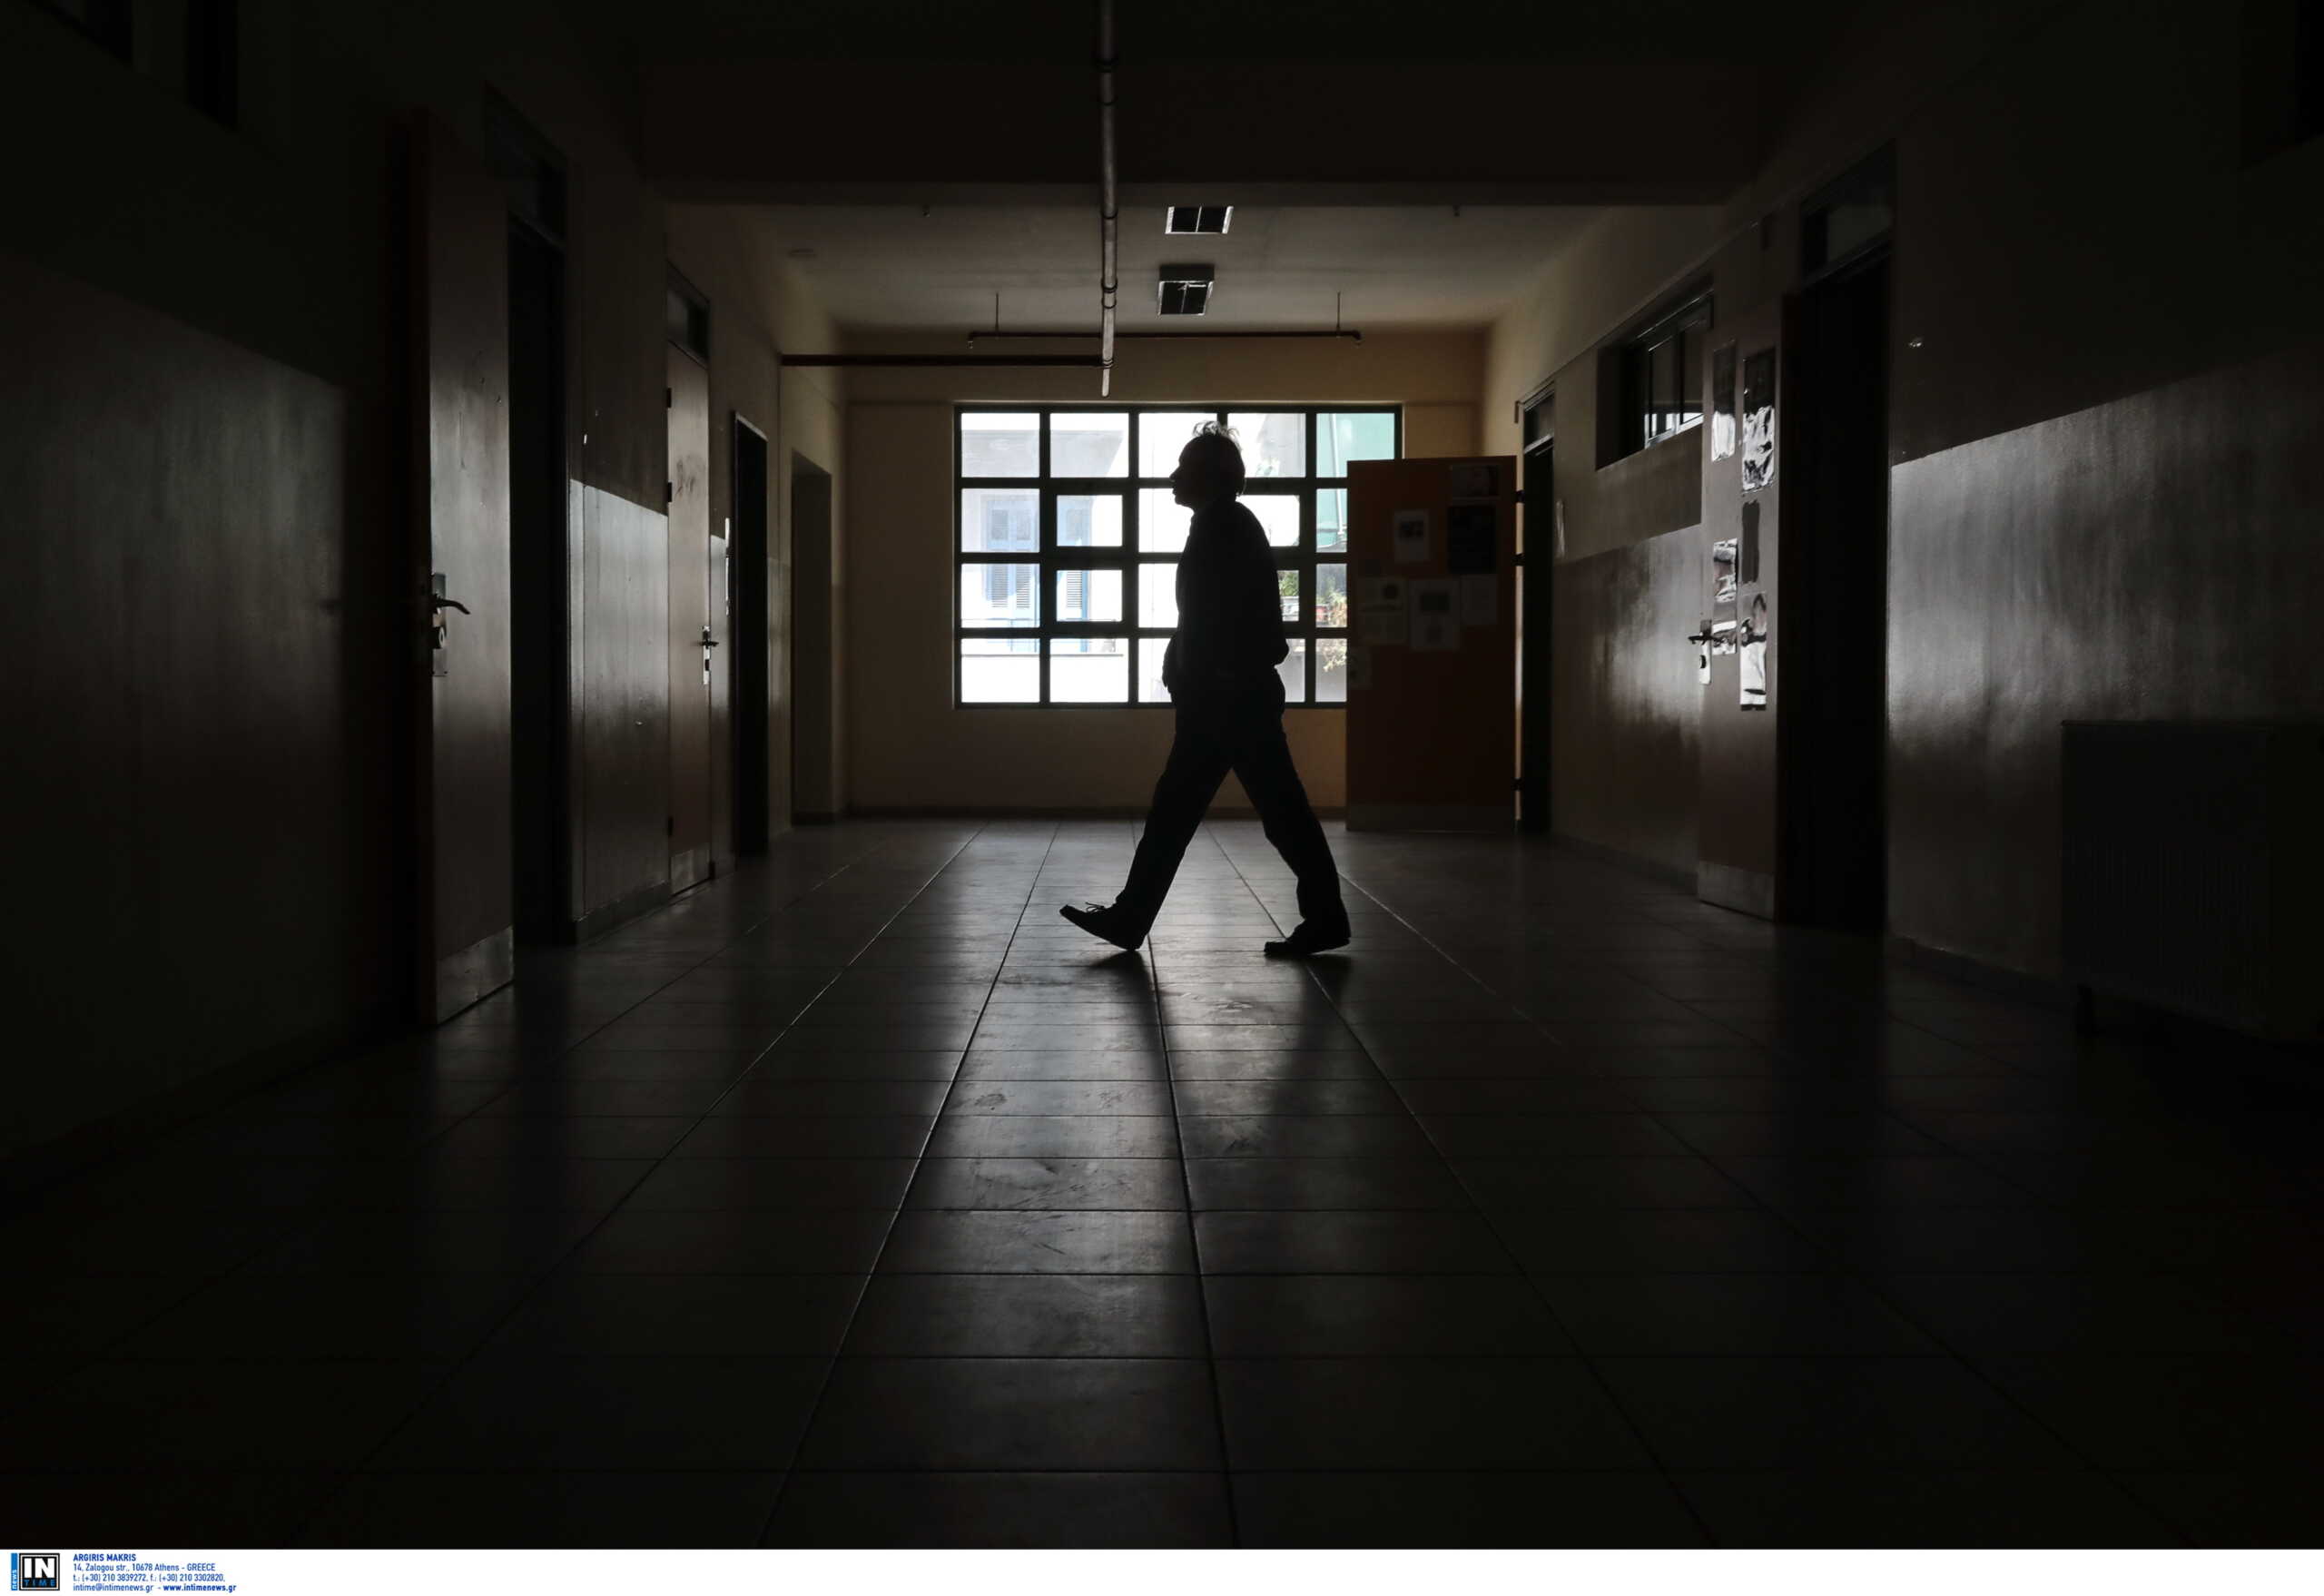 Χανιά: Μαθητής ξυλοκοπήθηκε από εξωσχολικούς μέσα στο σχολείο του – Ξεσπάει η μητέρα του θύματος